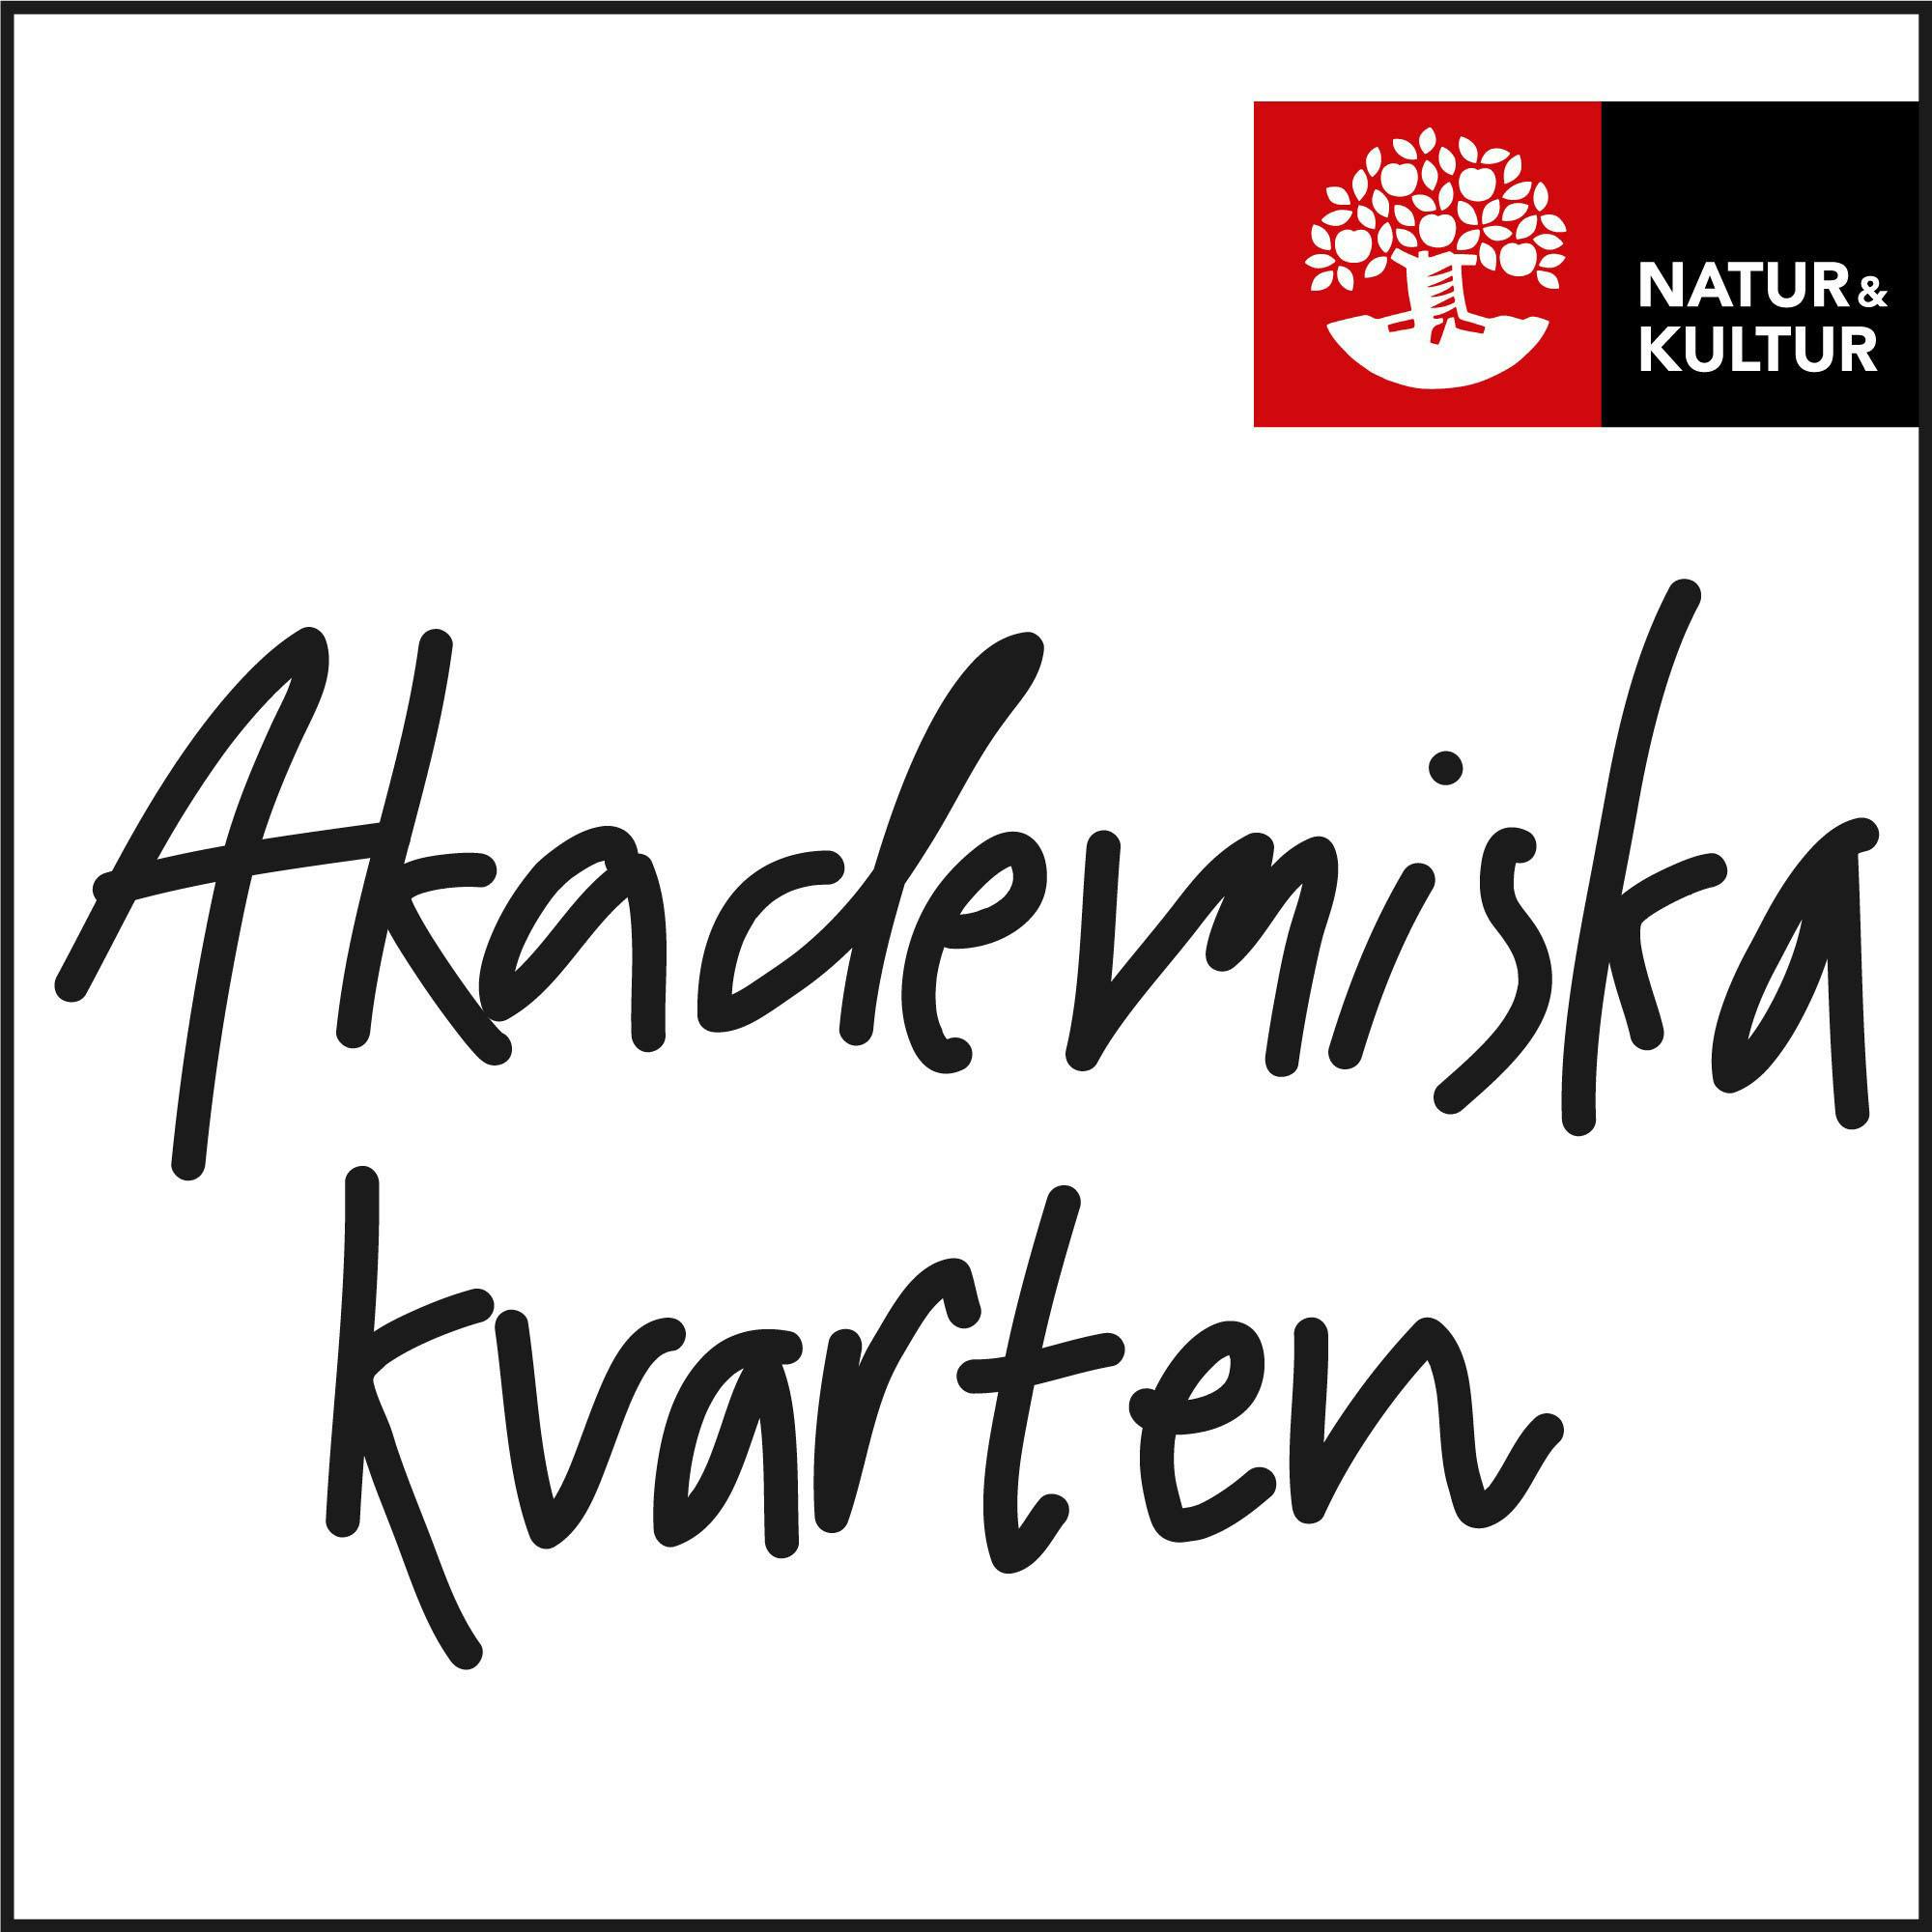 Akademiska kvarten avsnitt 3 - Christian Lundahl om PISA och jämförande pedagogik - undefined